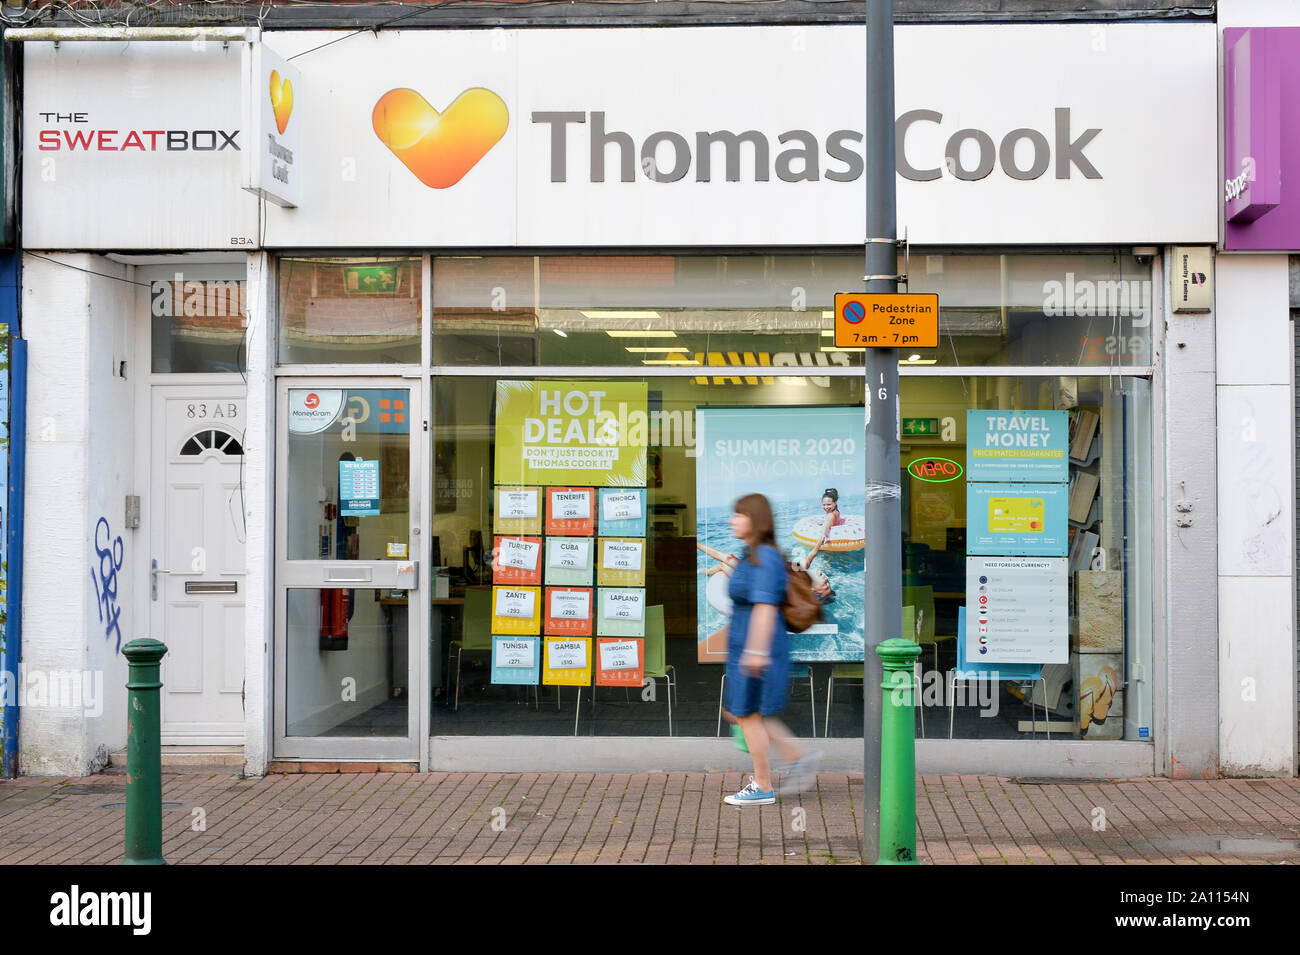 Thomas Cook fermé boutique sur East Street, Bedminster, Bristol, comme les 178 ans de tour opérateur Thomas Cook qui a cessé ses activités avec effet immédiat après avoir échoué dans une offre finale d'obtenir un plan de sauvetage des créanciers. Banque D'Images